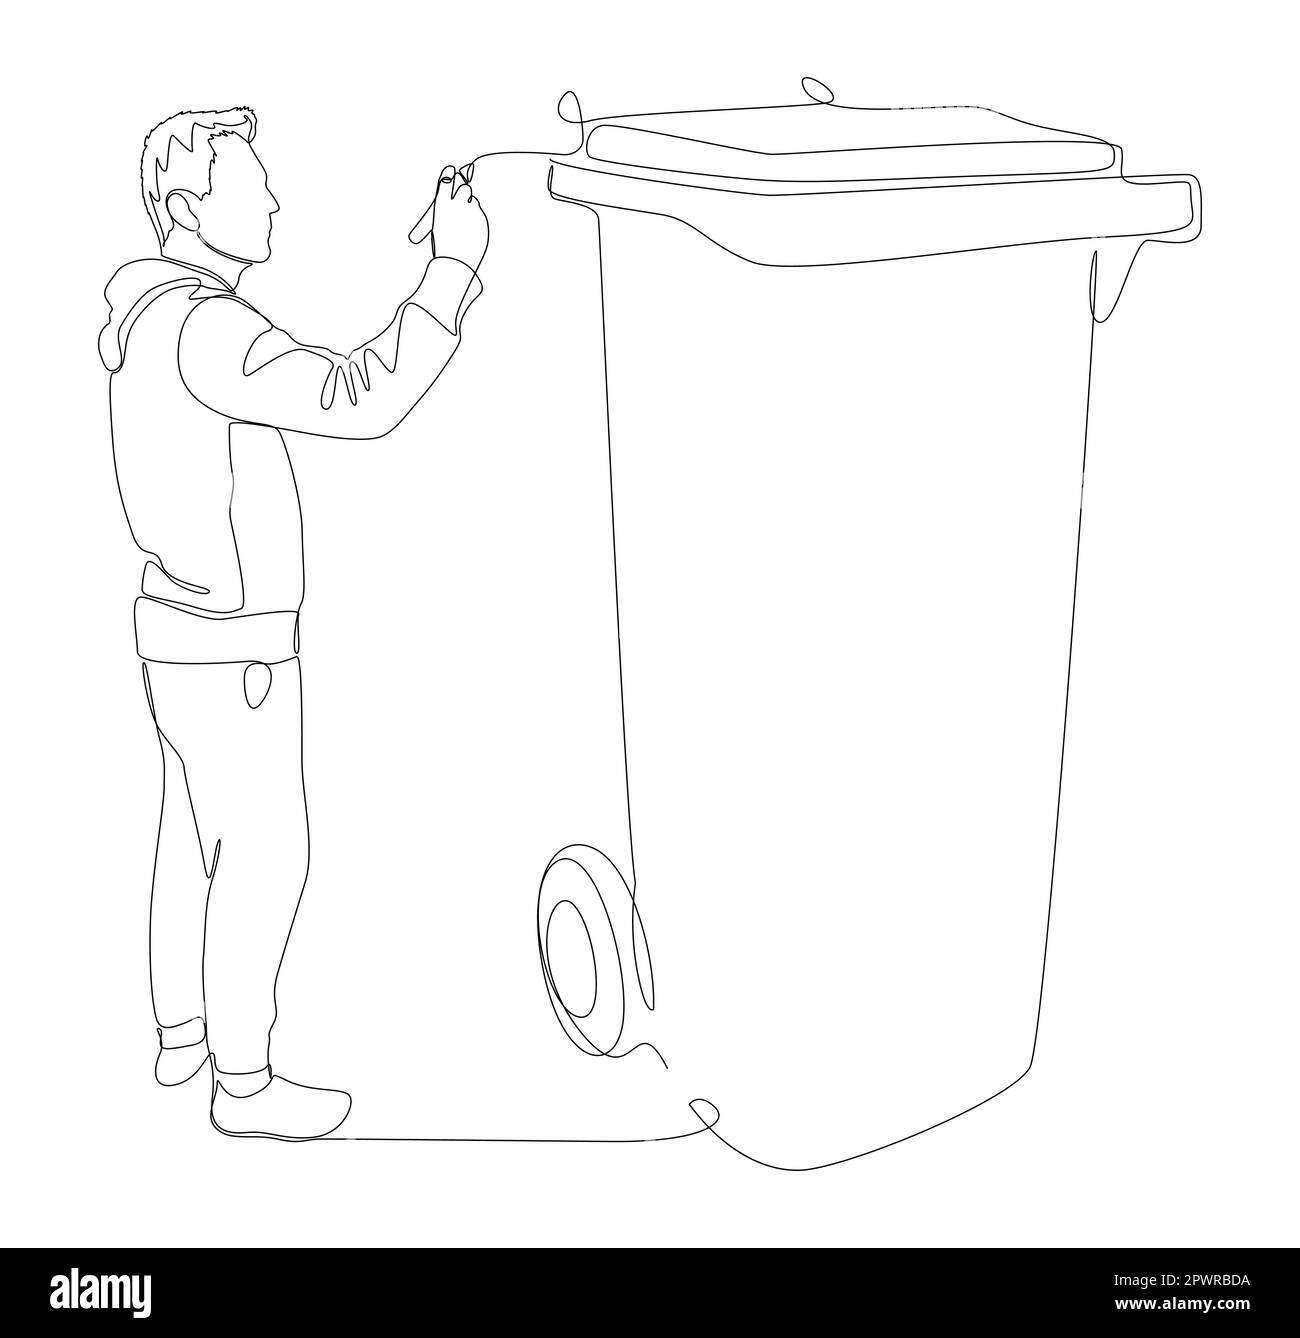 Eine durchgehende Linie von Mann, der mit dem Finger auf den Müllcontainer zeigt. Vektorkonzept zur Darstellung dünner Linien. Kontur Zeichnen kreativer Ideen. Stock Vektor